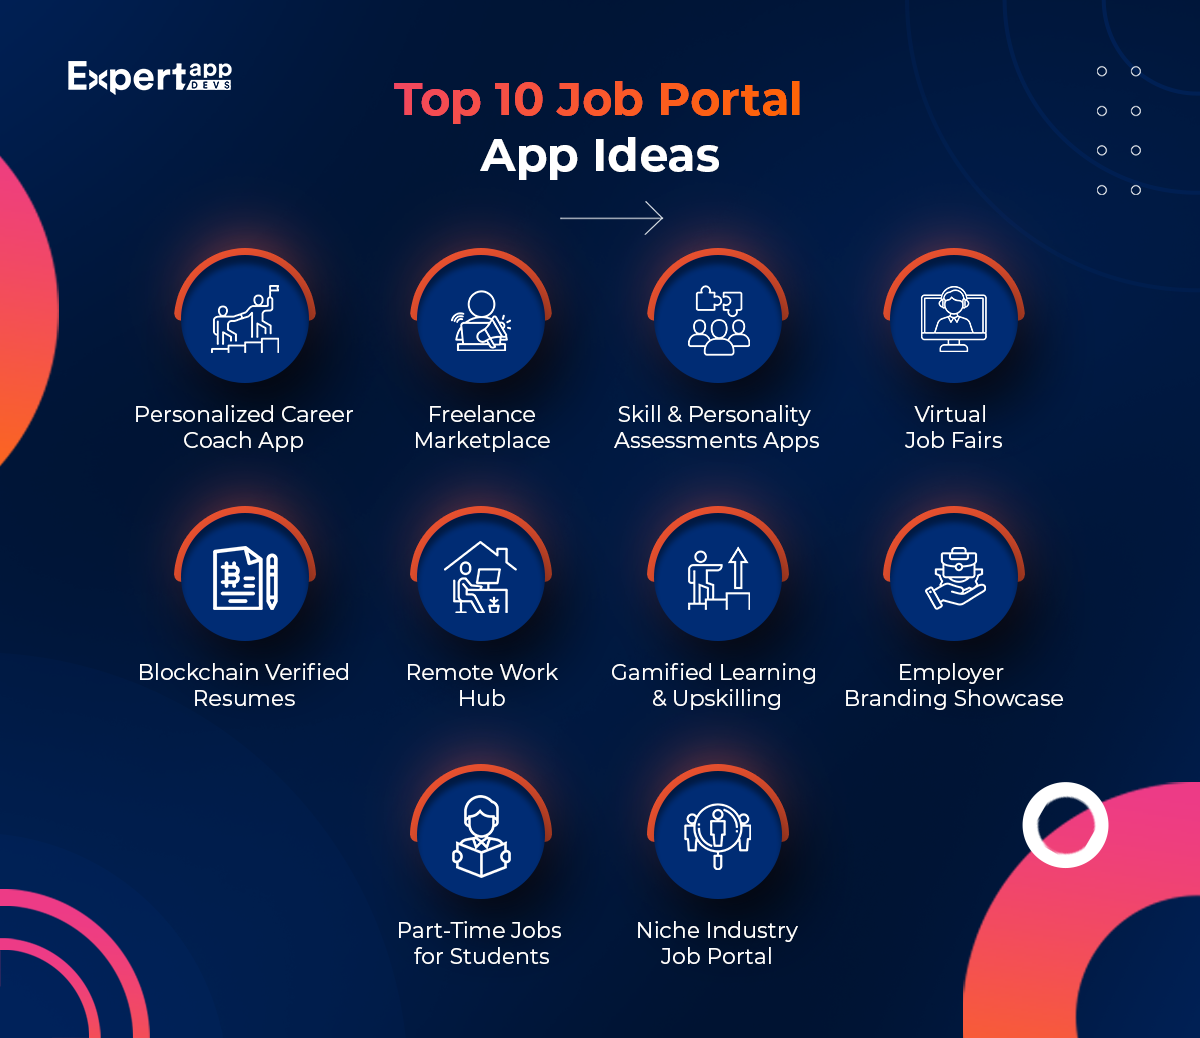 Top 10 Job Portal App Ideas